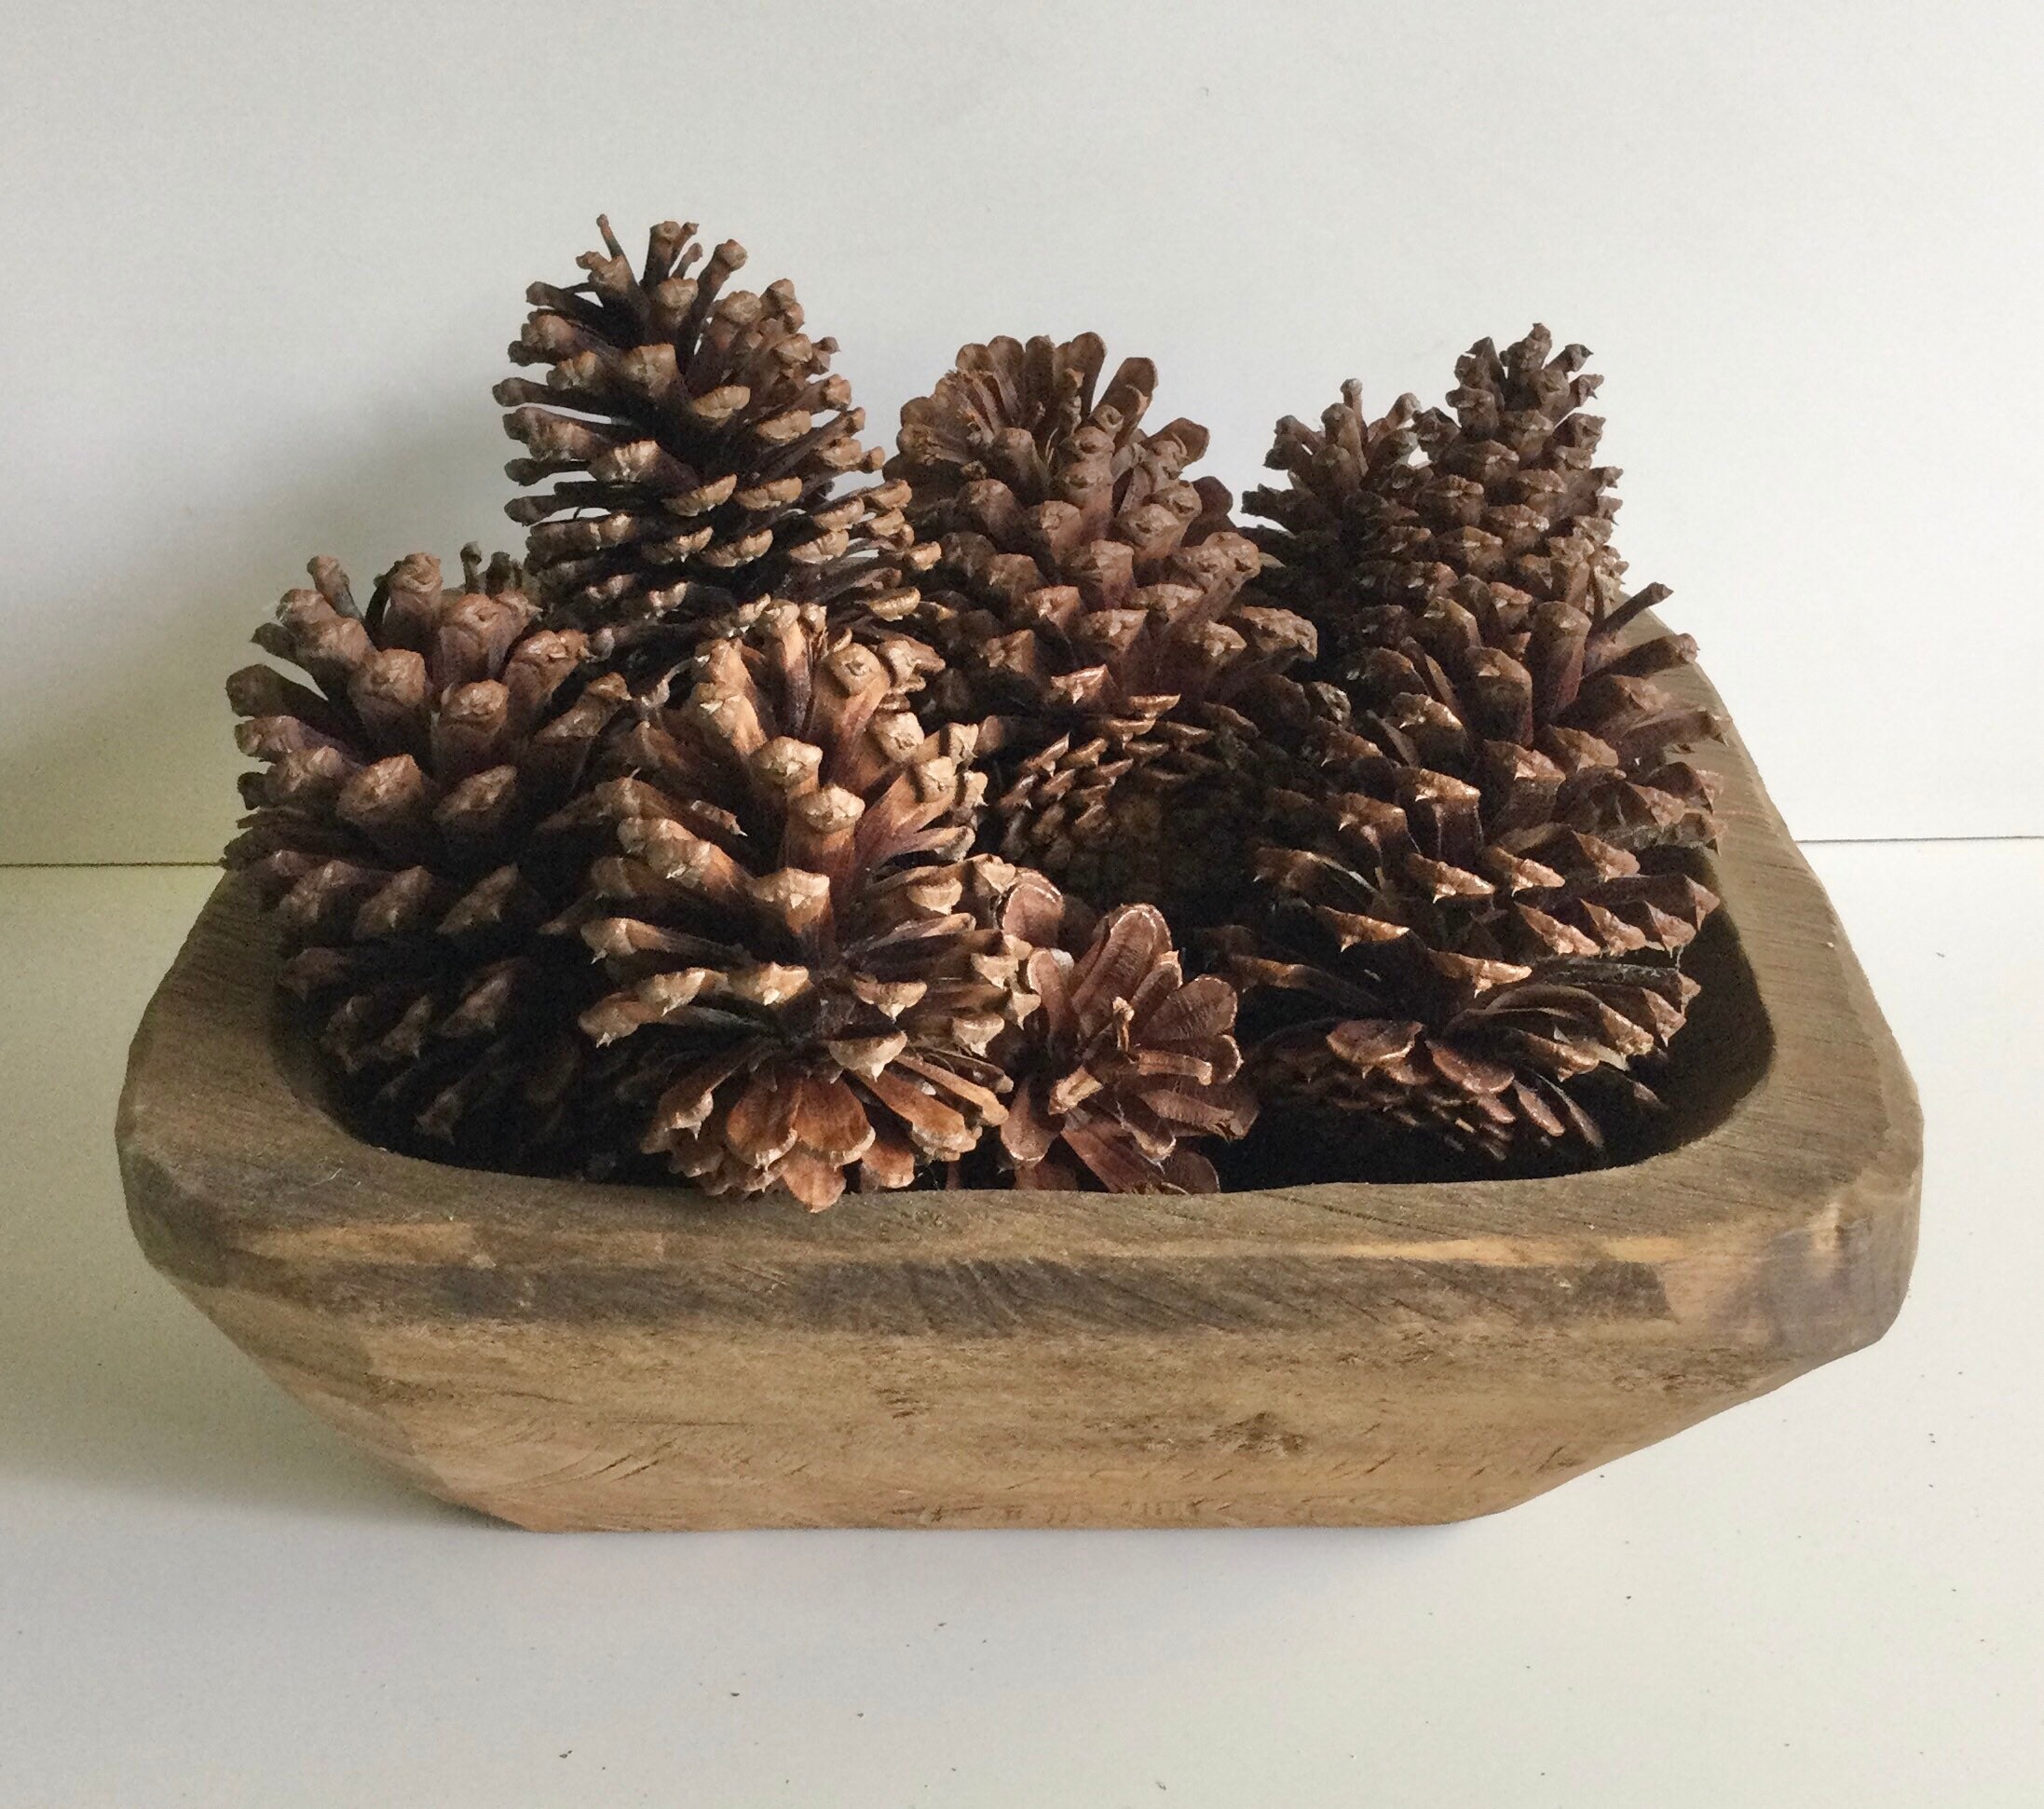 25 Pinecones - 3-7 Skinny Pine Cones - Supplies - Decor - Long Pinecones